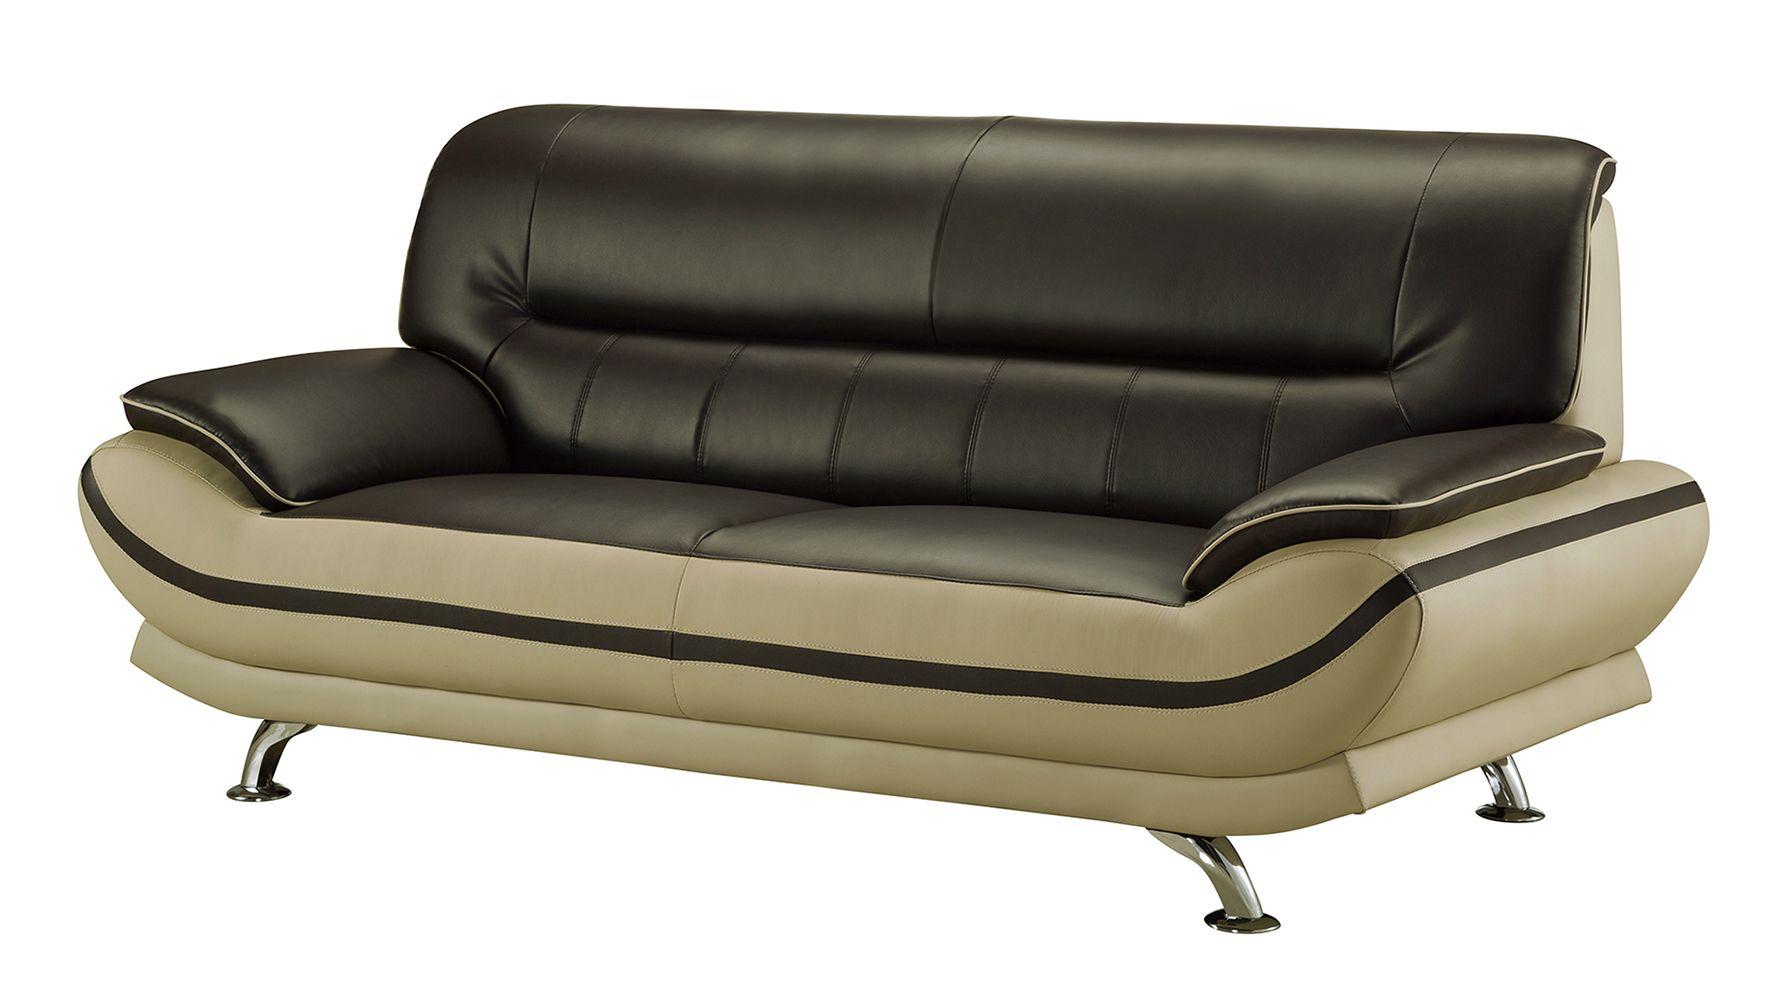 

    
American Eagle Furniture AE709-MA.LG Sofa Set Light Gray/Mahogany AE709-MA.LG-2PC
